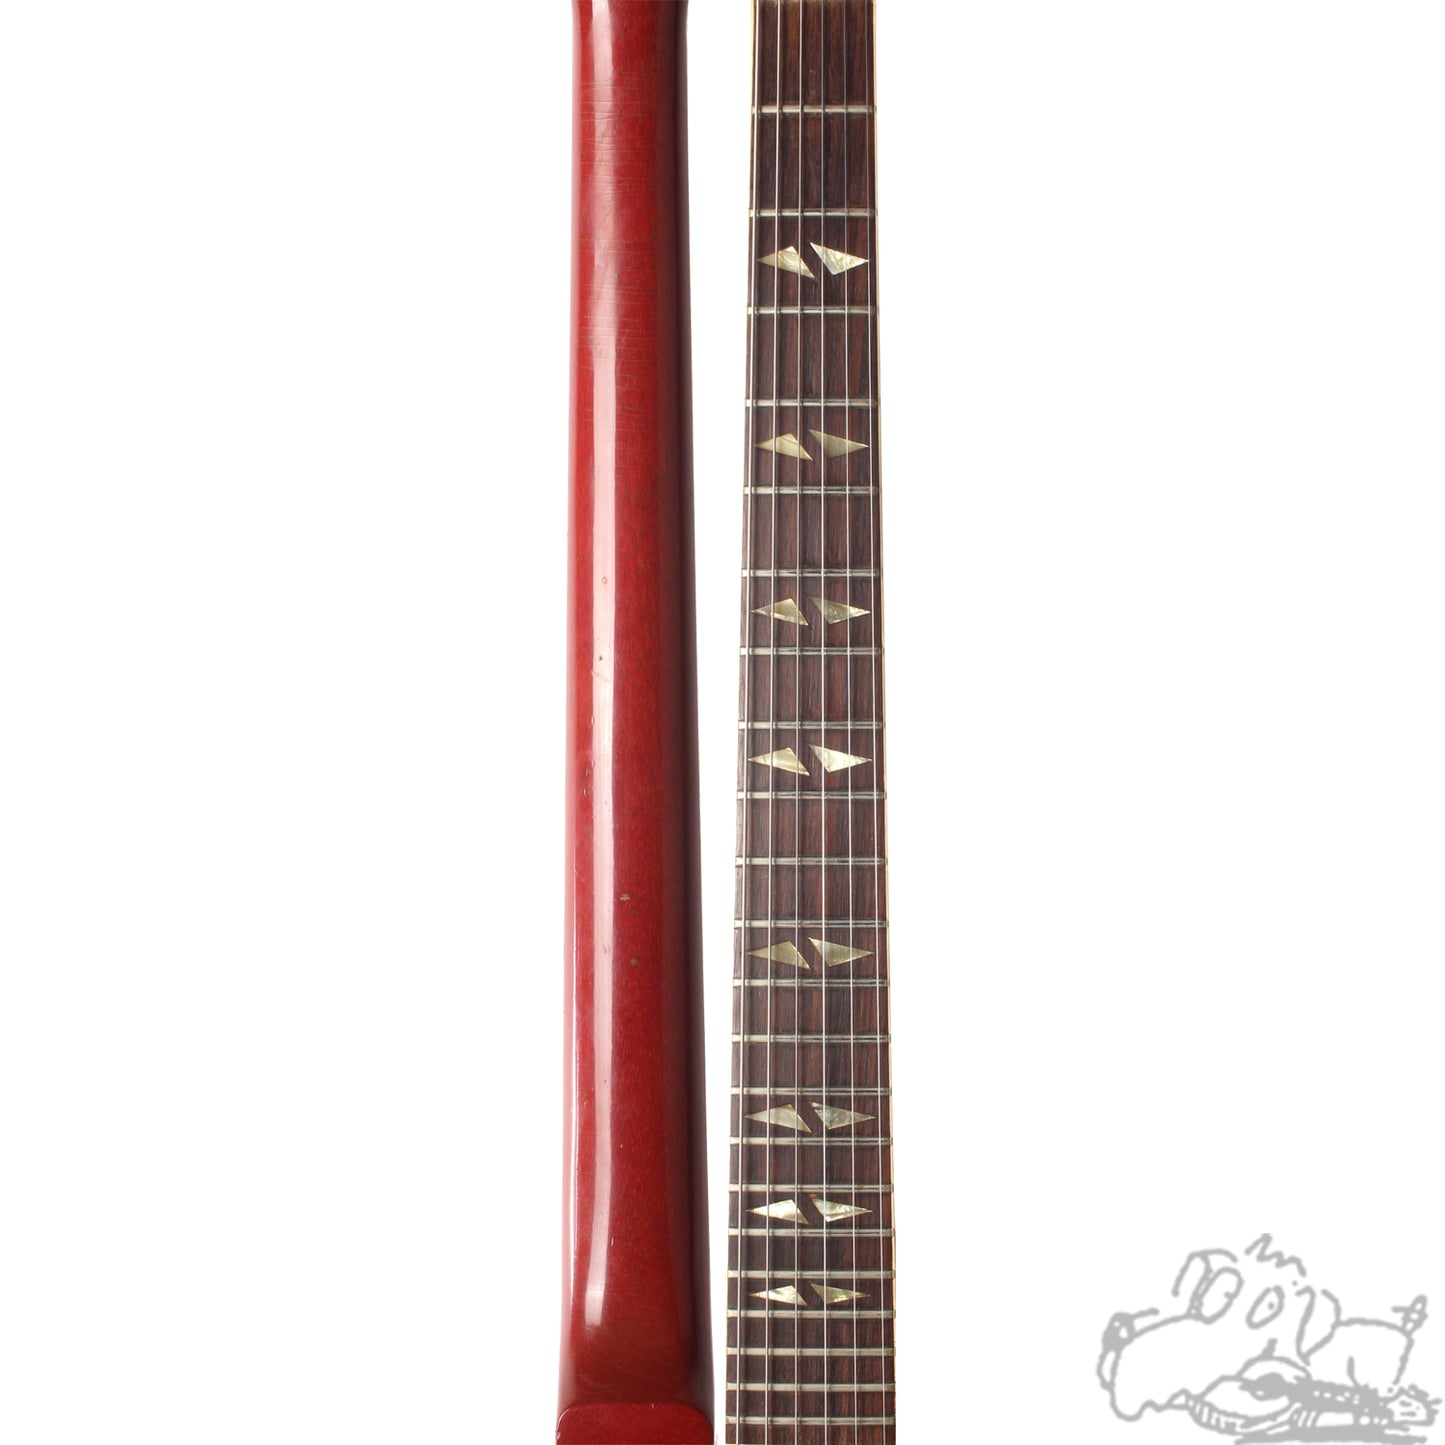 1966 Gibson Trini Lopez